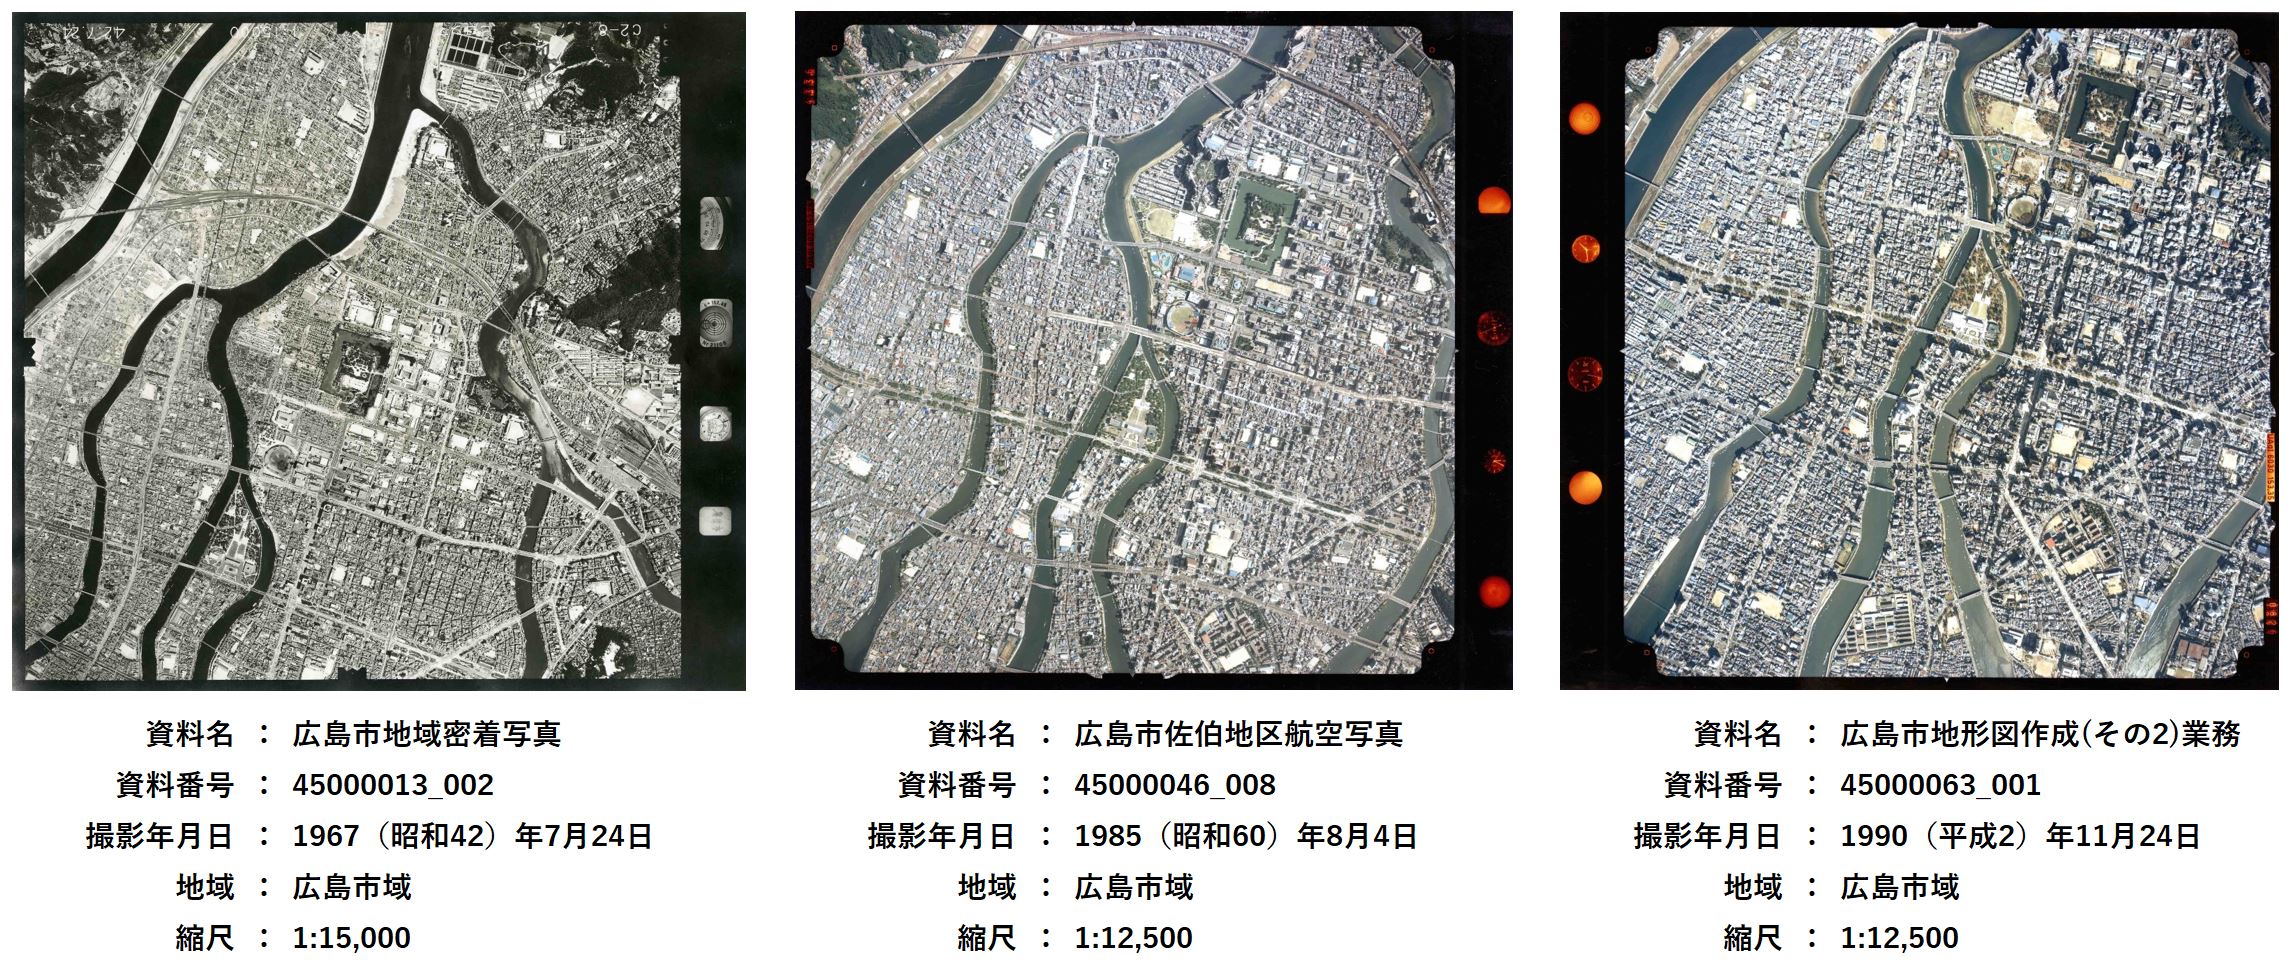 広島市公文書館所蔵、広島市中心部の航空写真